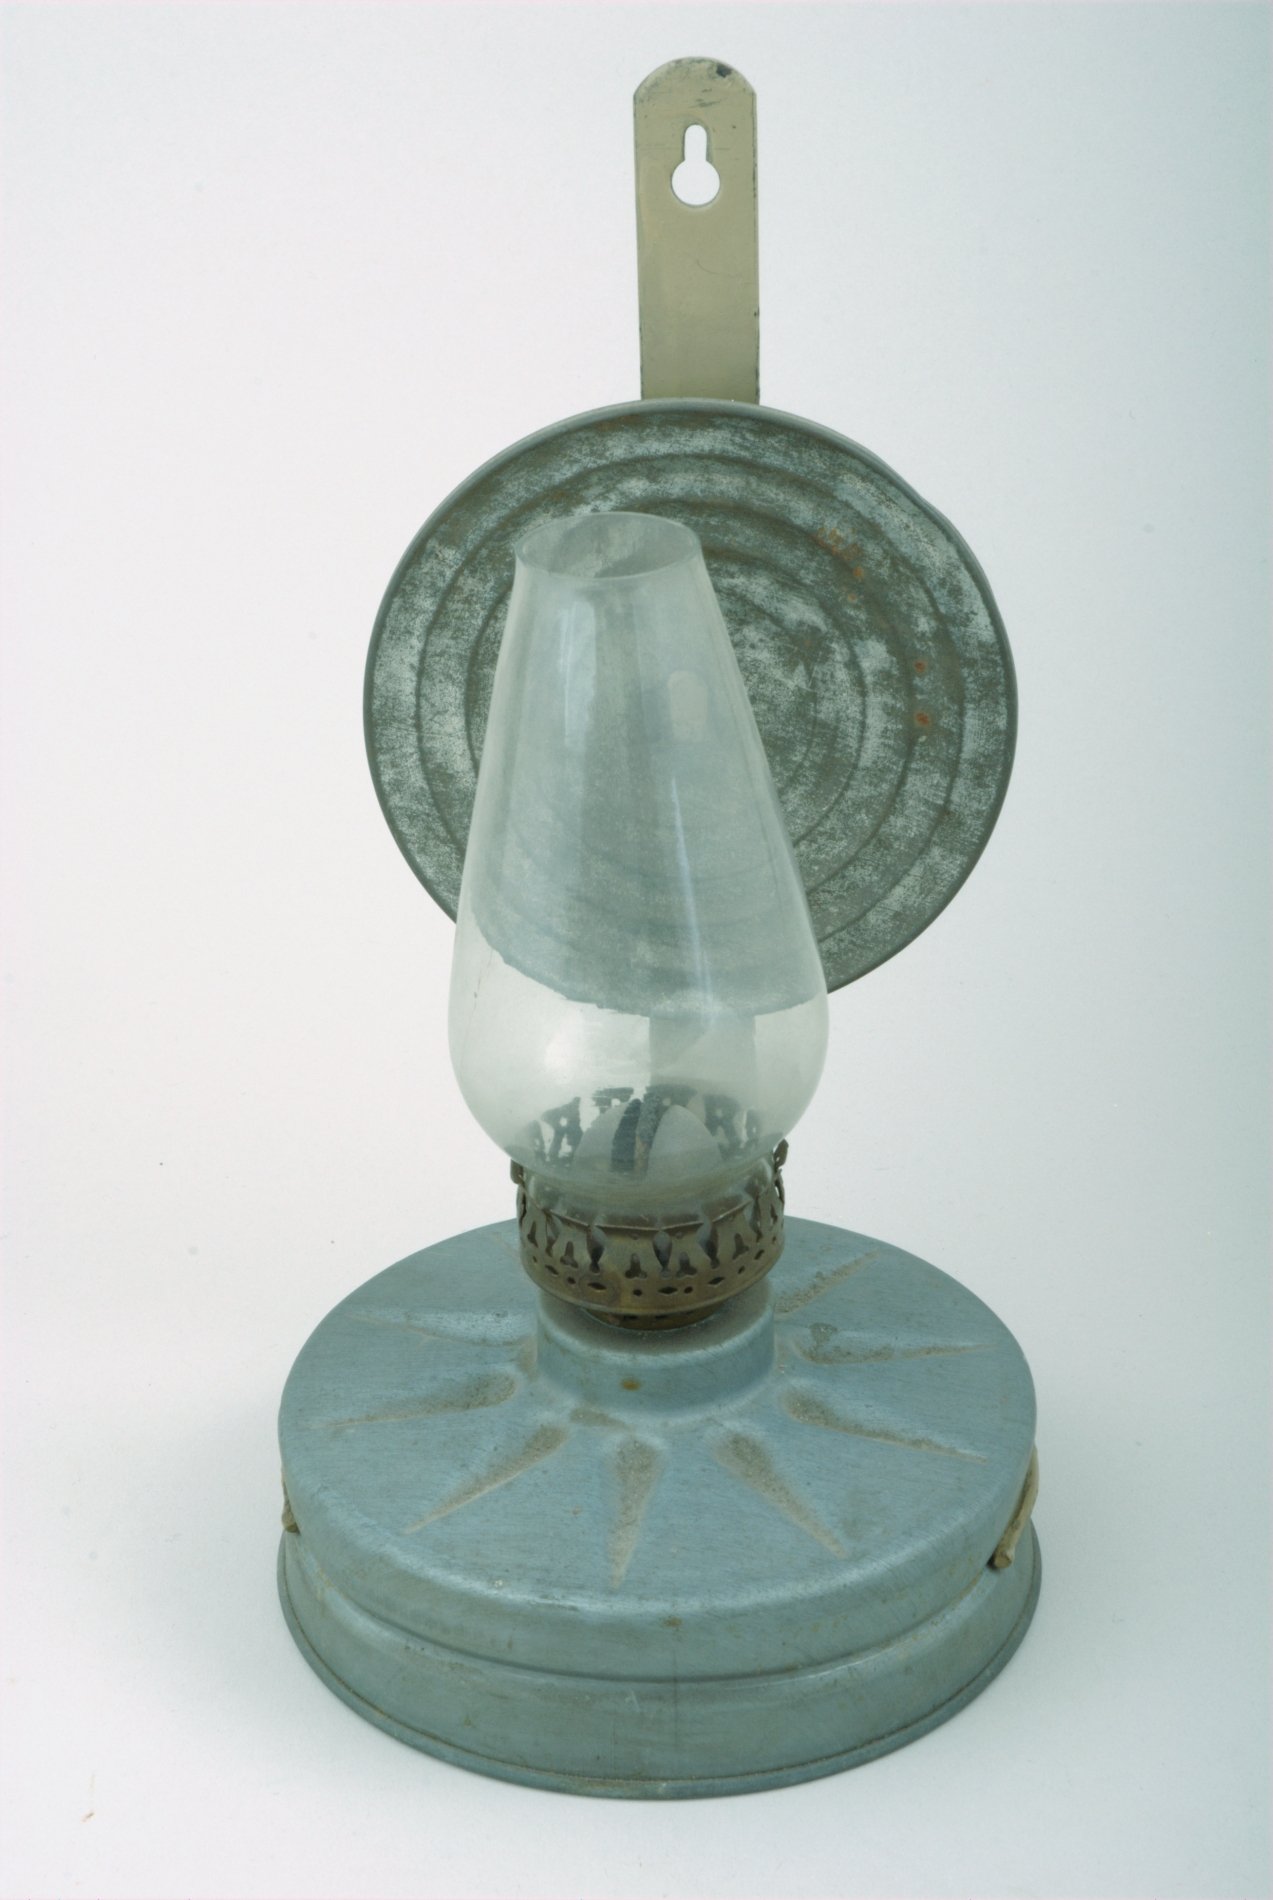 Petroleumlampe aus dem Luftschutz-Filter einer Gasmaske (Stiftung Domäne Dahlem - Landgut und Museum, Weiternutzung nur mit Genehmigung des Museums CC BY-NC-SA)